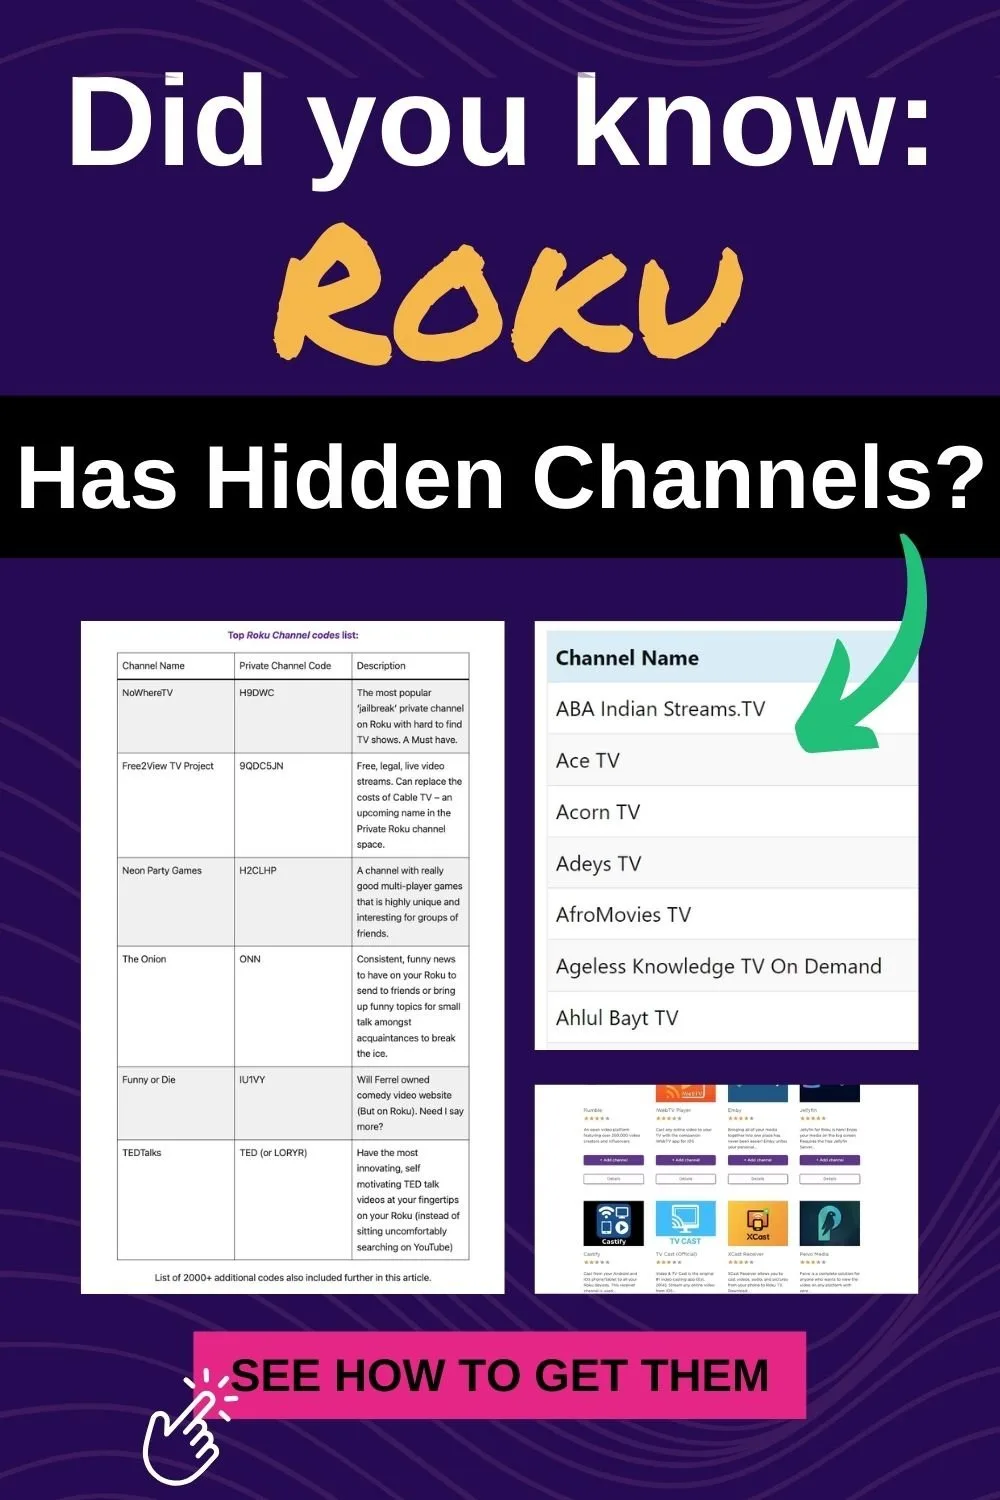 Roku has secret channels